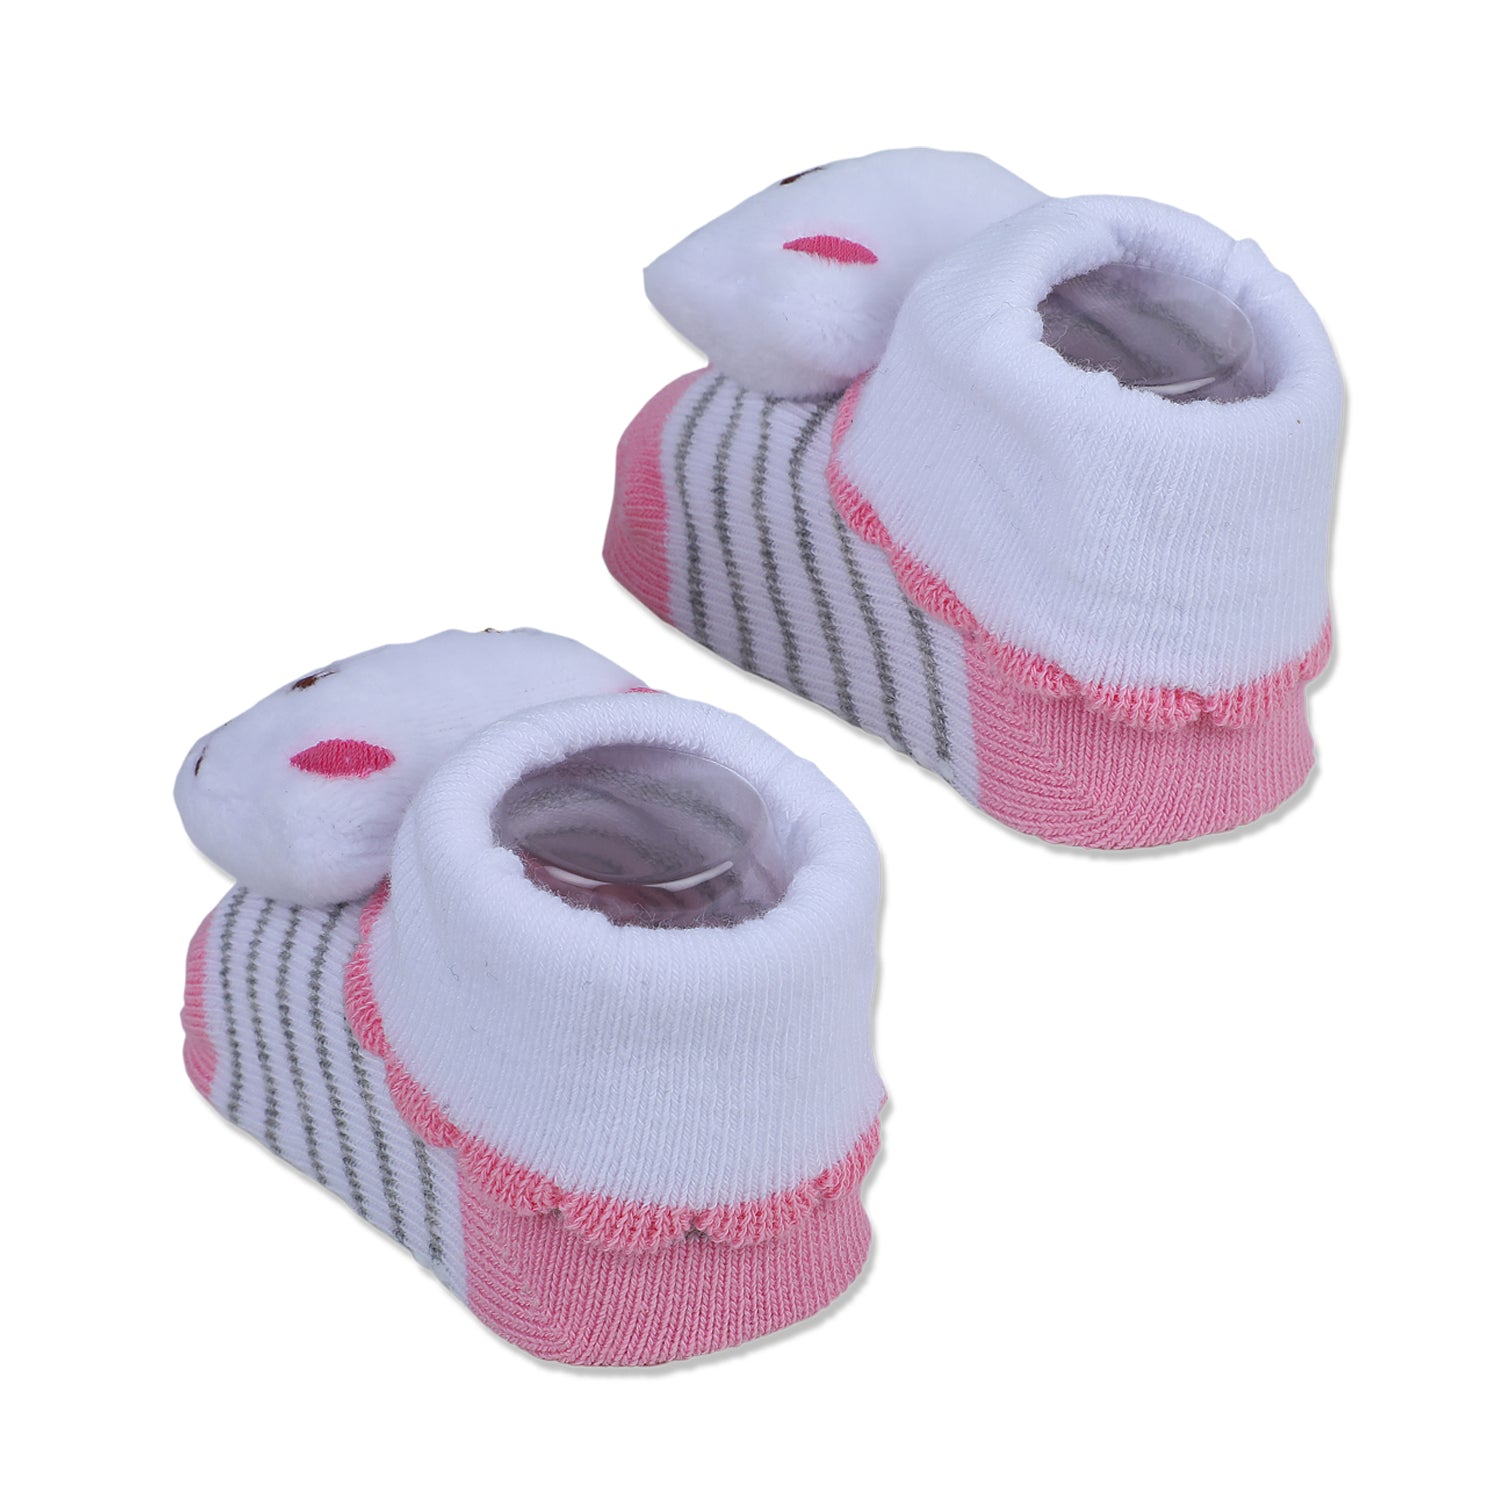 Baby Moo Blushing Kitty Cotton Anti-Skid 3D Socks - White - Baby Moo